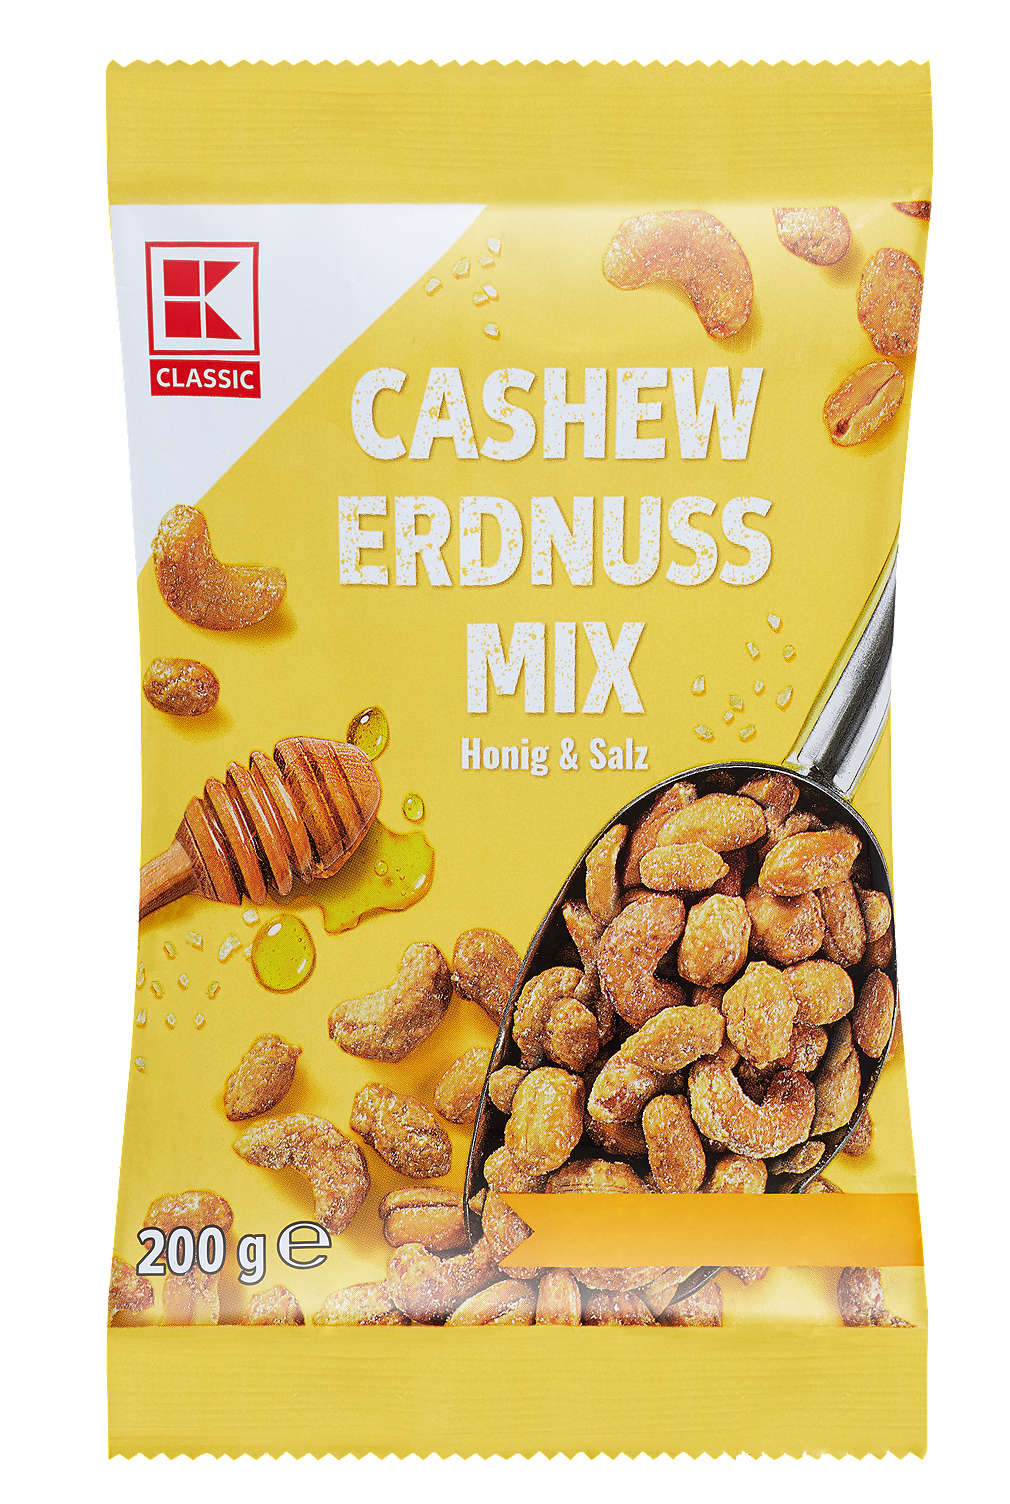 Abbildung des Angebots K-CLASSIC Cashew-Erdnuss-Mix 